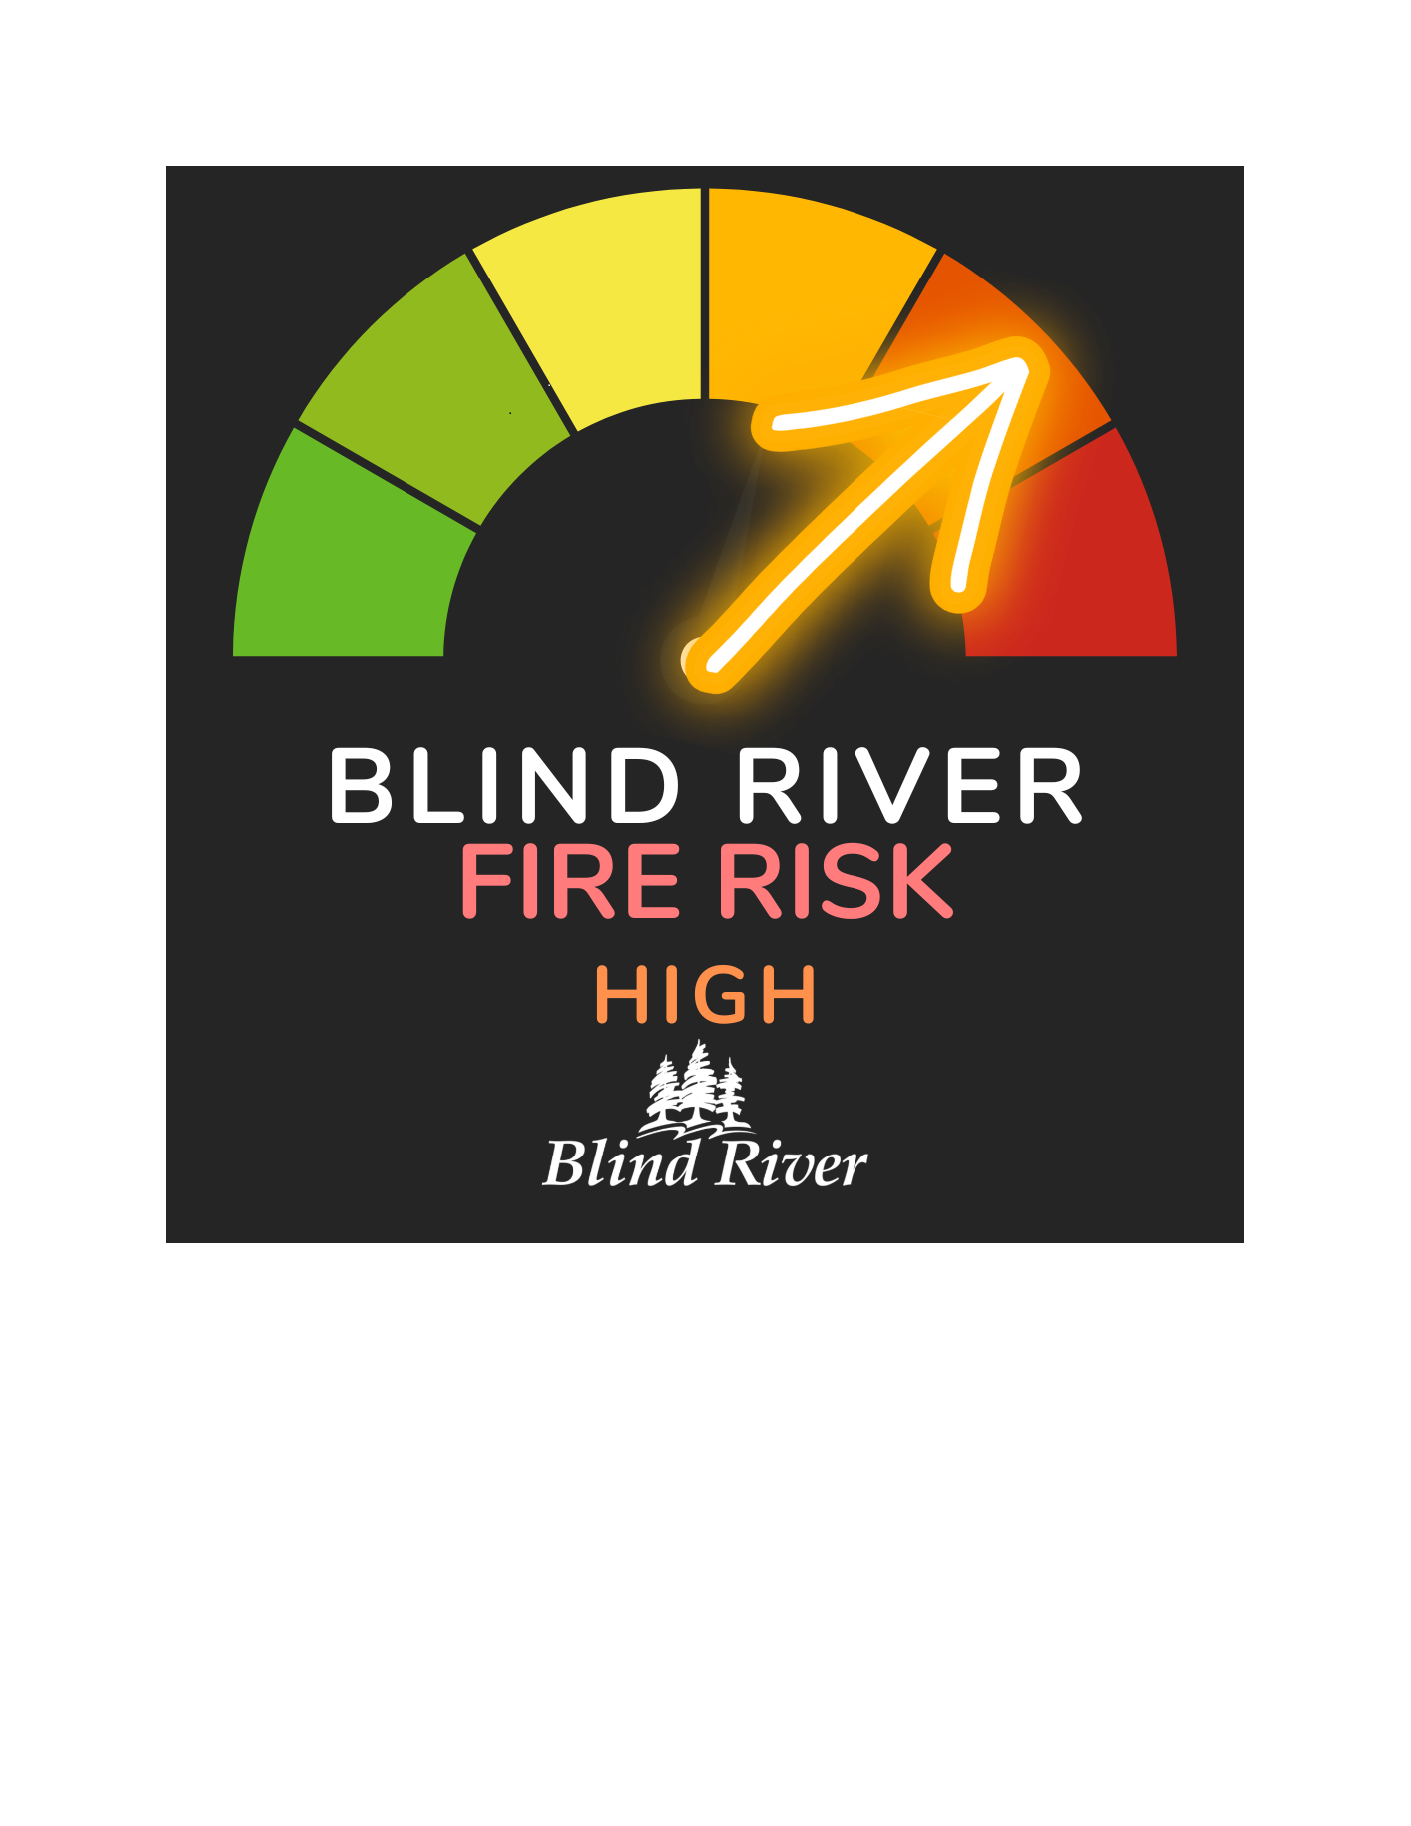 Fire risk high poster